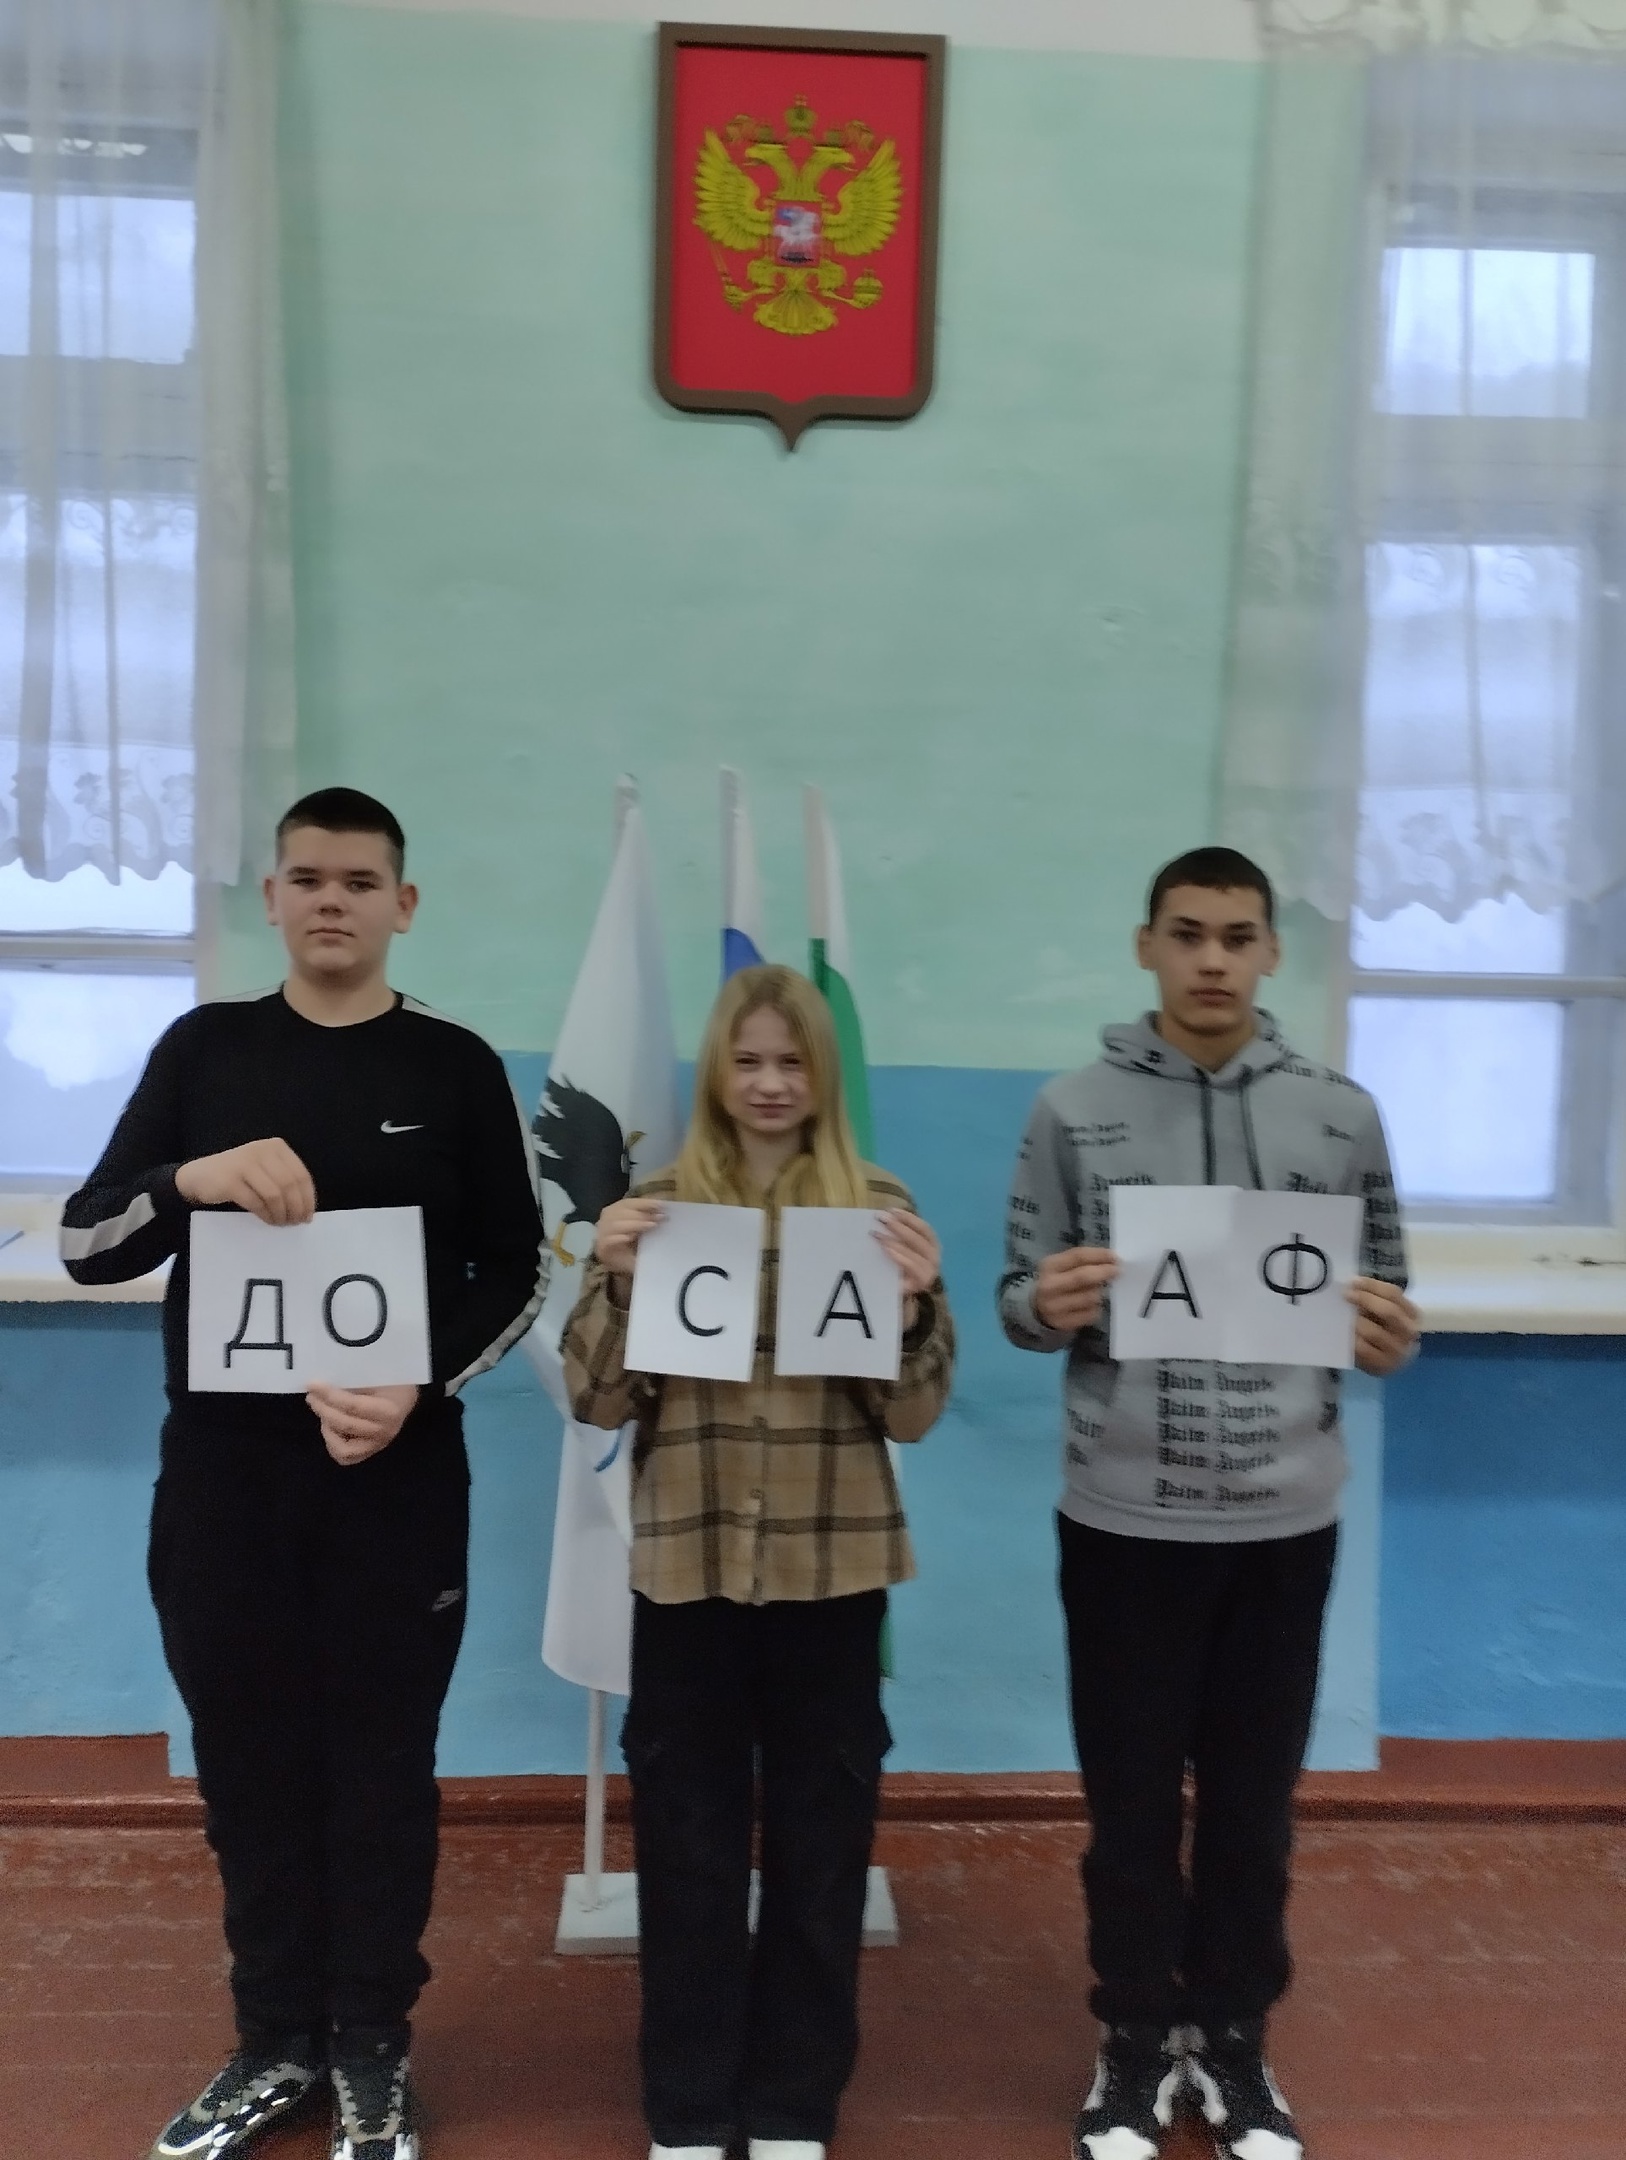 97-ая годовщина создания оборонного общества страны ОСОАВИАХИМ- ДОСААФ России.